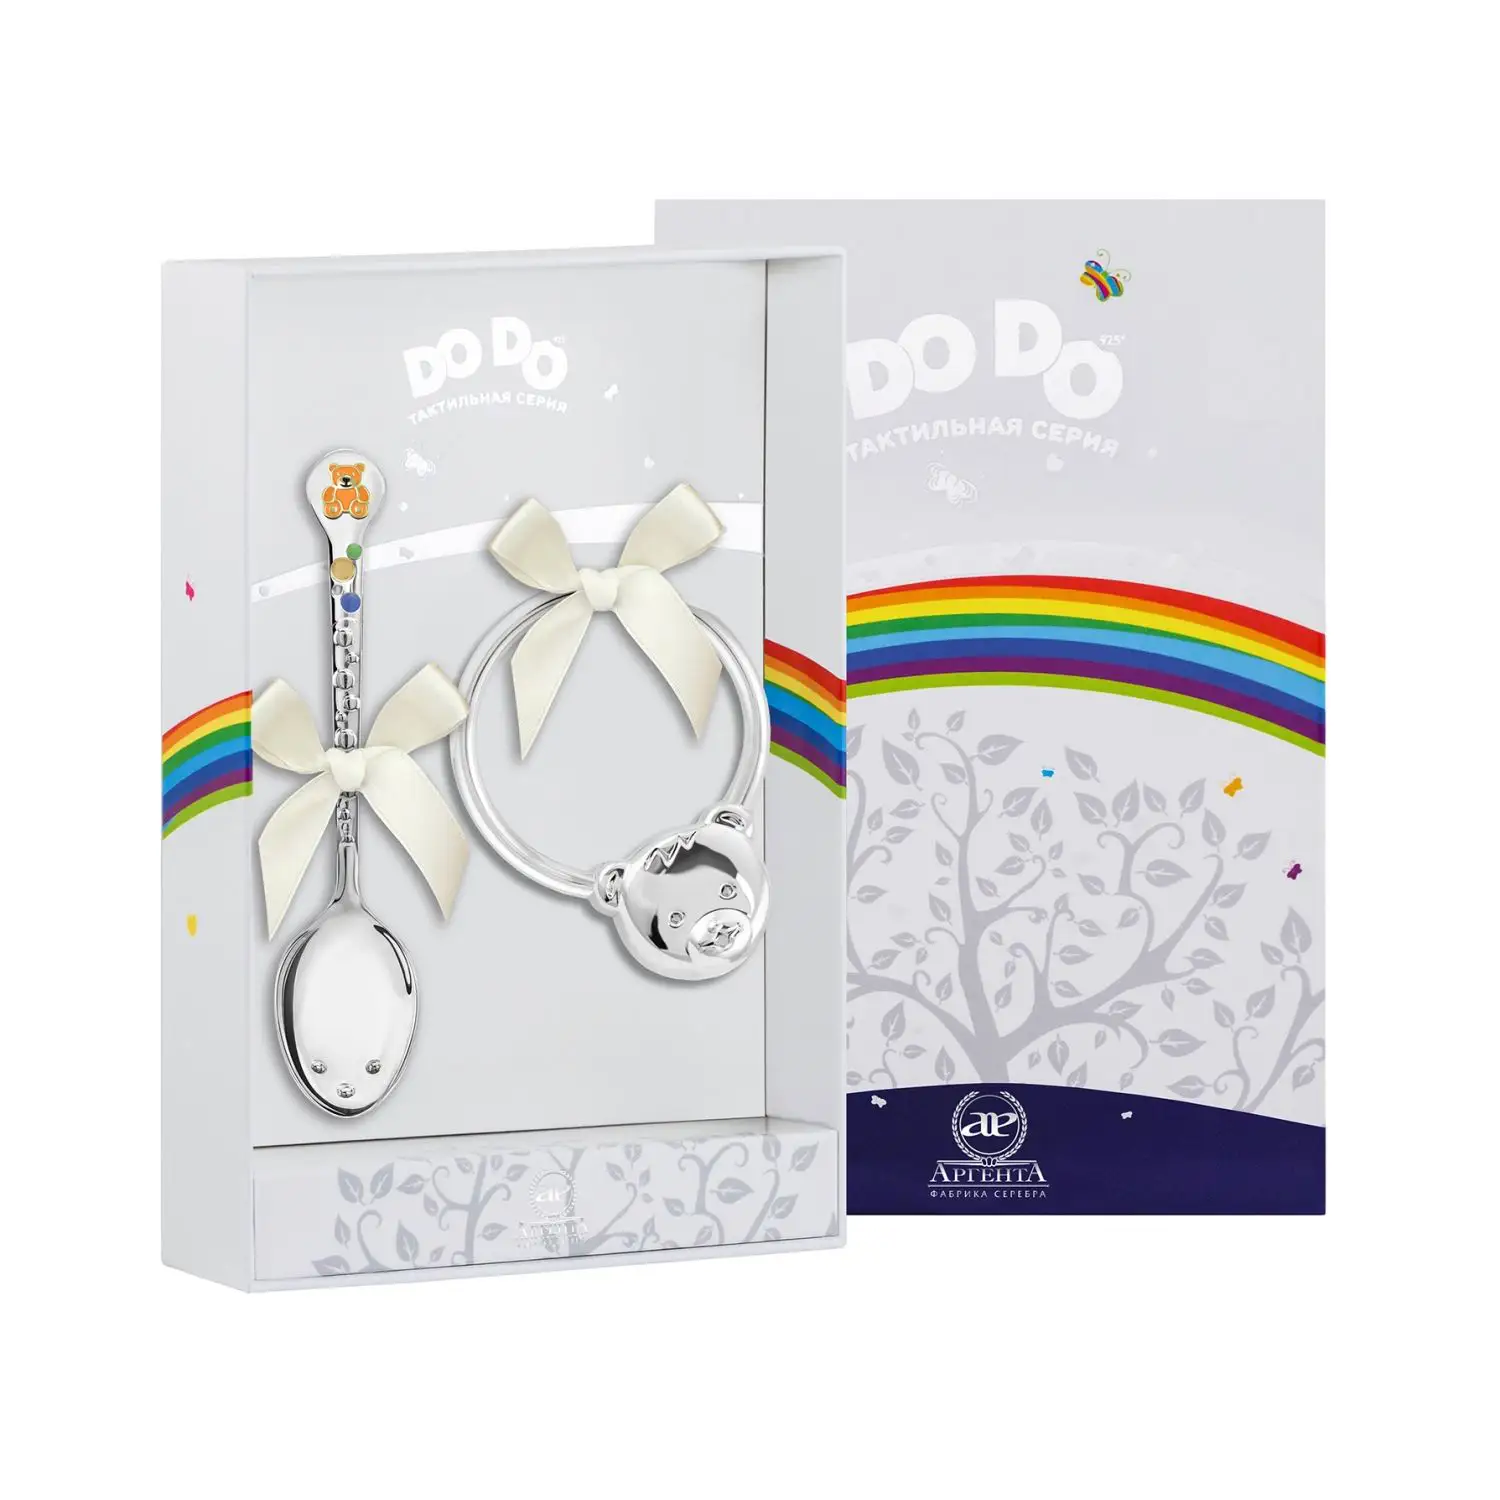 Набор для малышей DODO Медвежонок: ложка и погремушка (Серебро 925) набор для малышей dodo машинка ложка и погремушка серебро 925